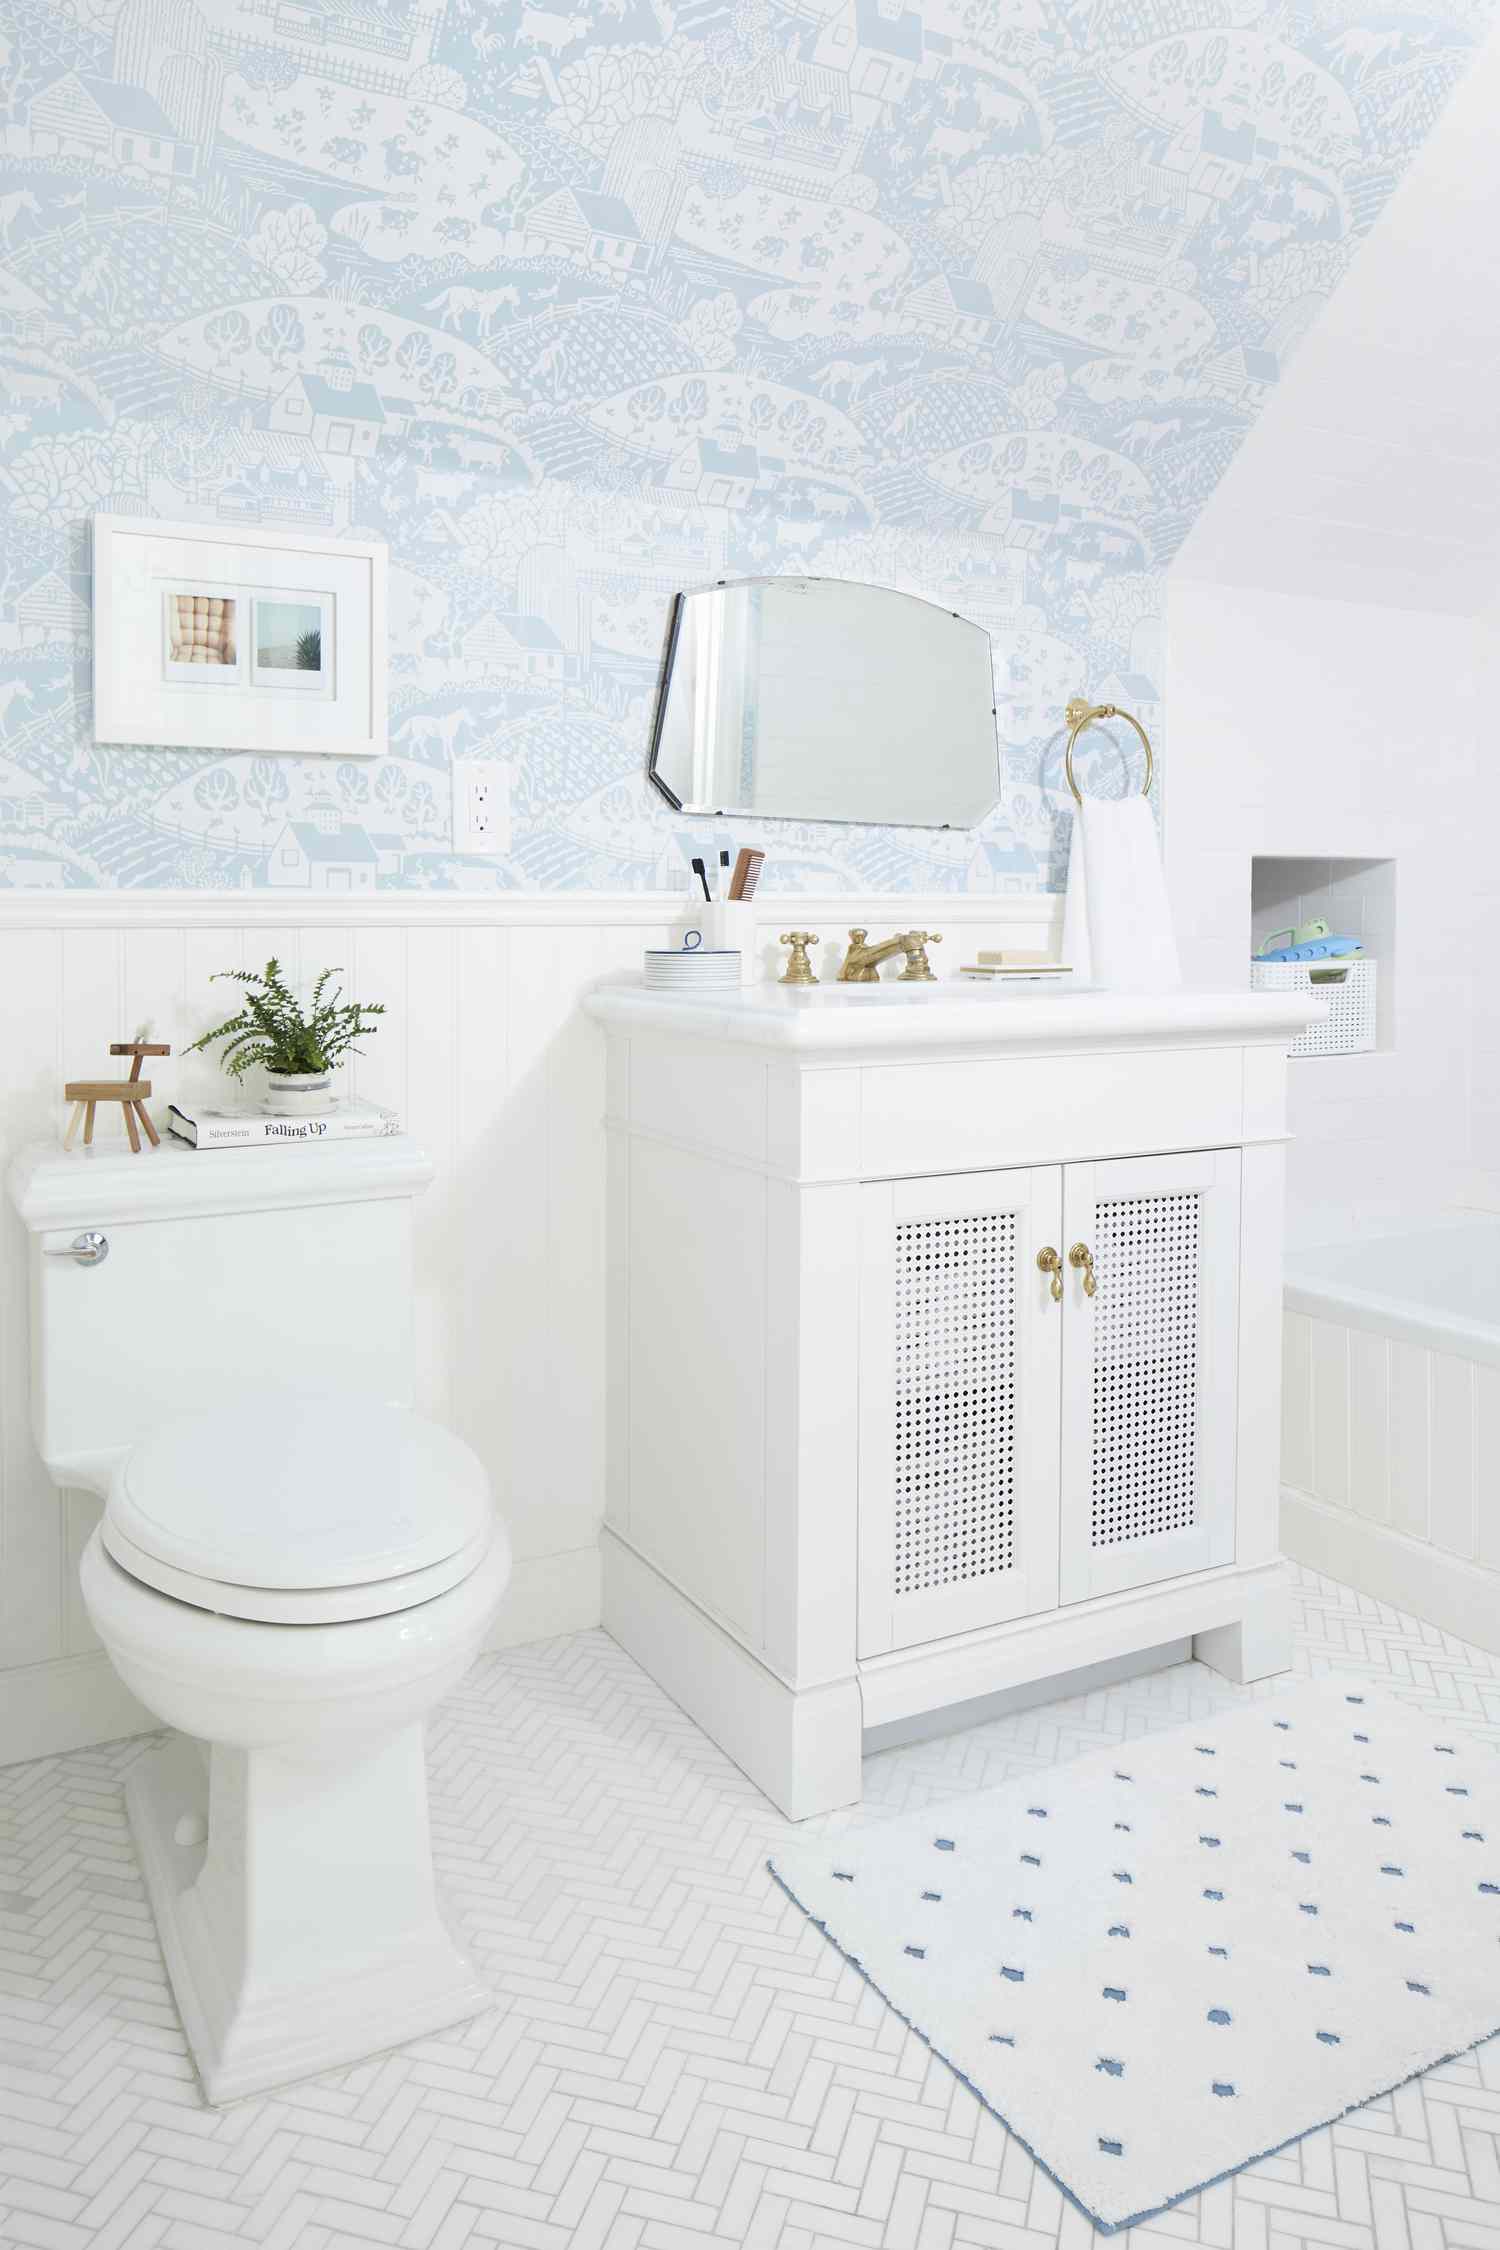 Salle de bain blanche avec papier peint bleu clair sur murs inclinés